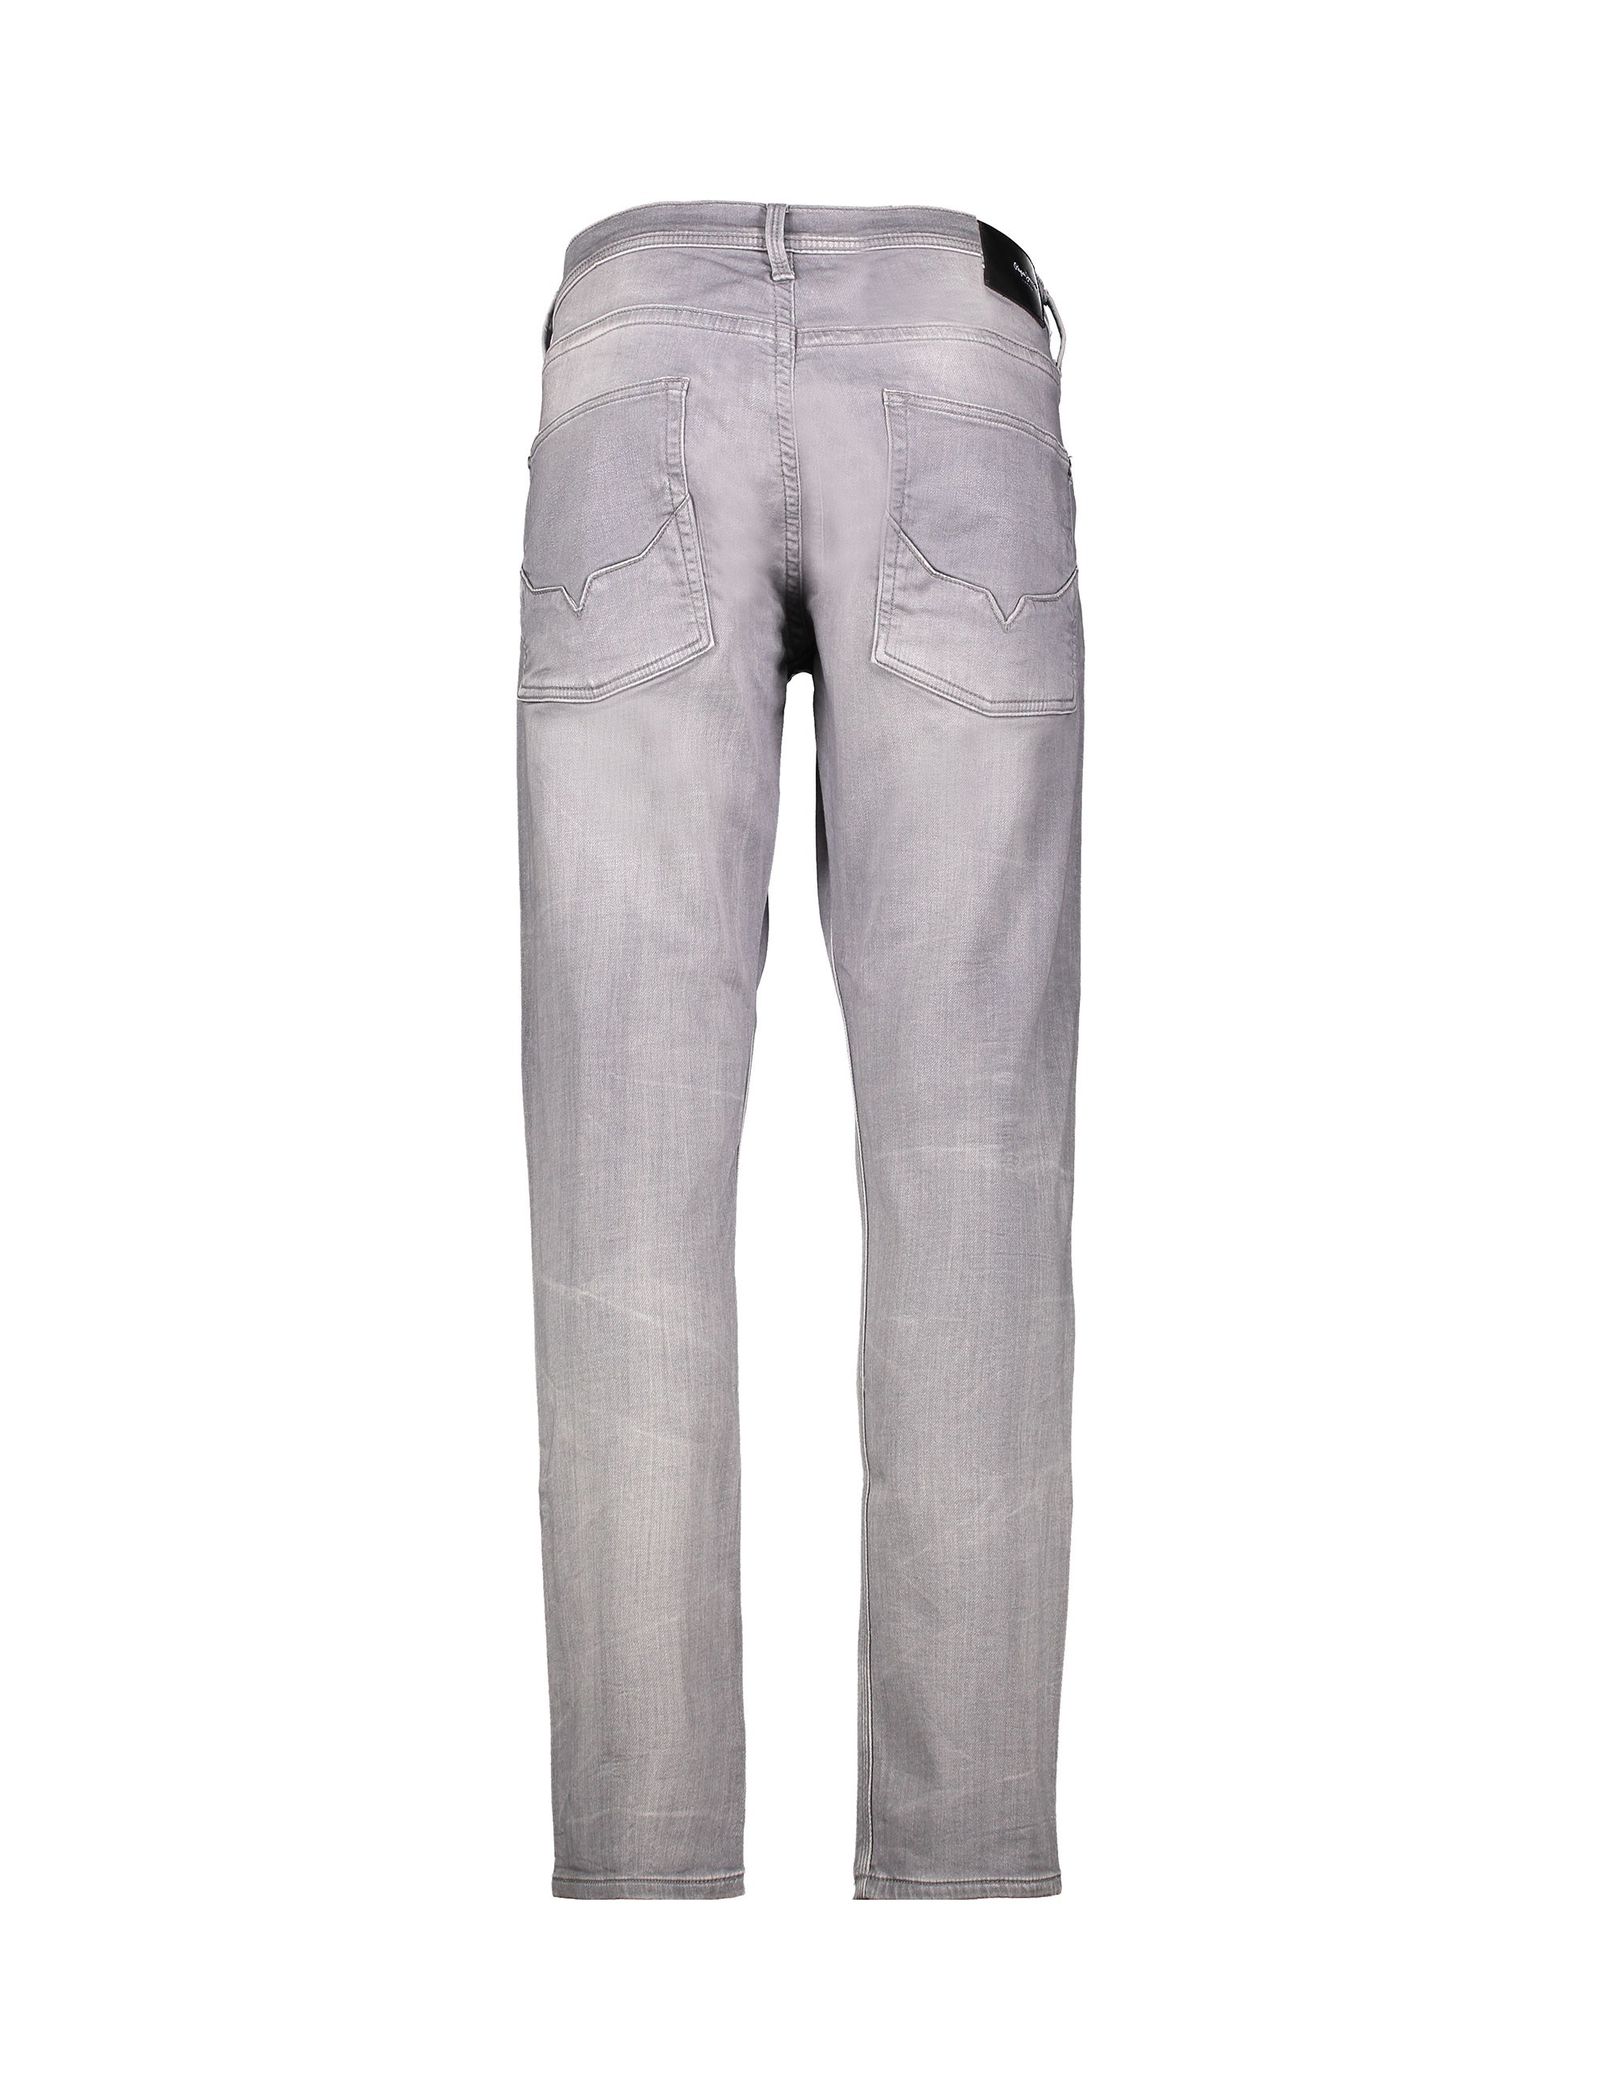 شلوار جین راسته مردانه TRACK - پپه جینز - طوسي - 3